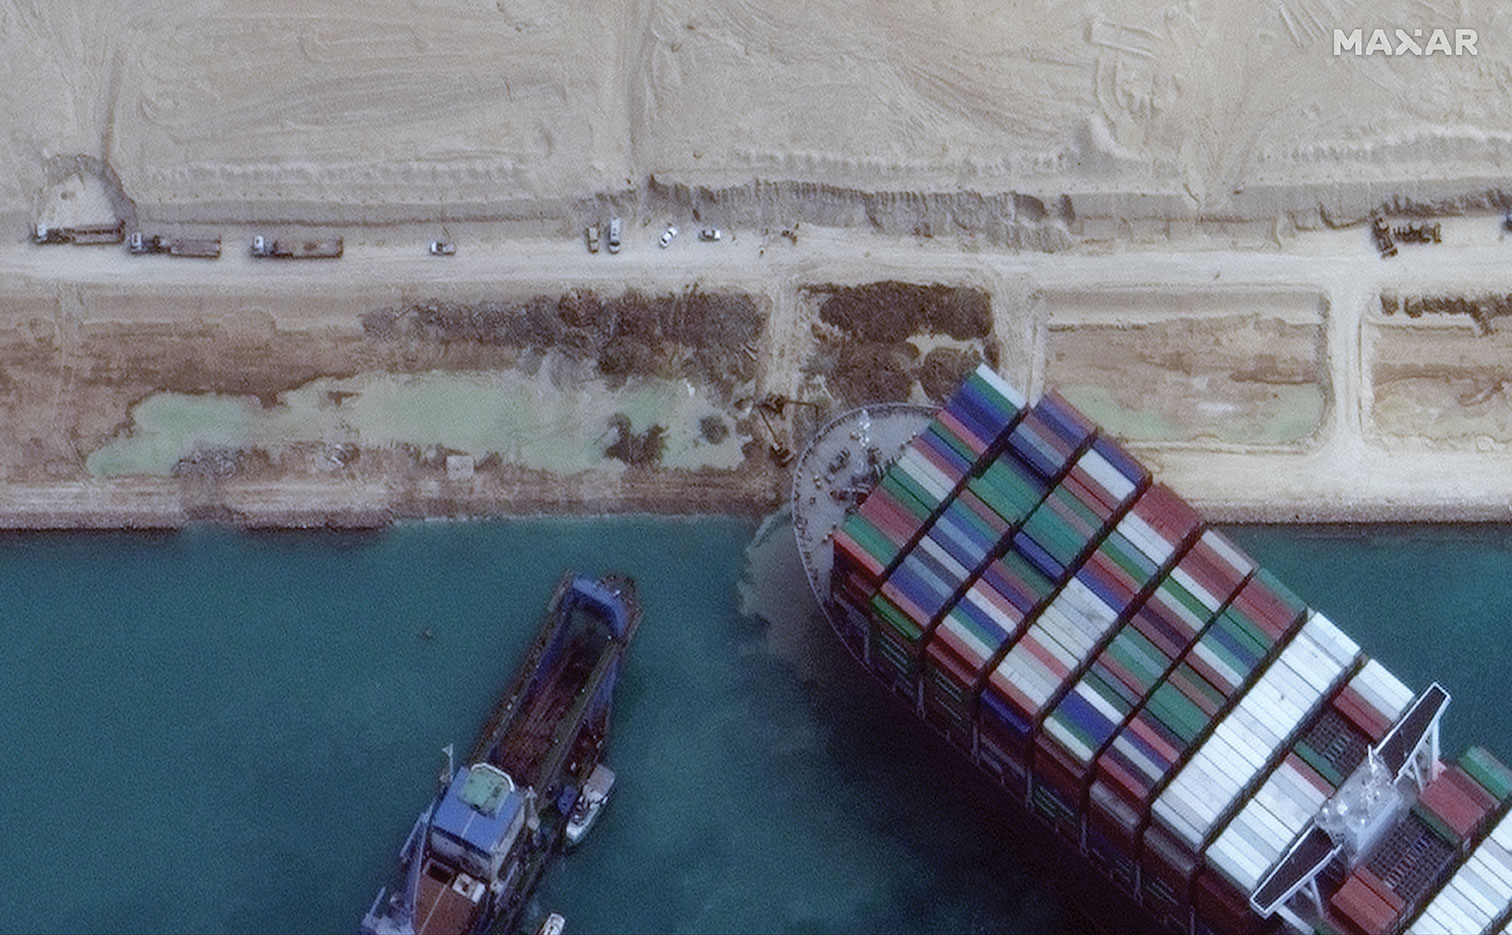 Canal de Suez: l'Ever Given remis à flot, le trafic reprend